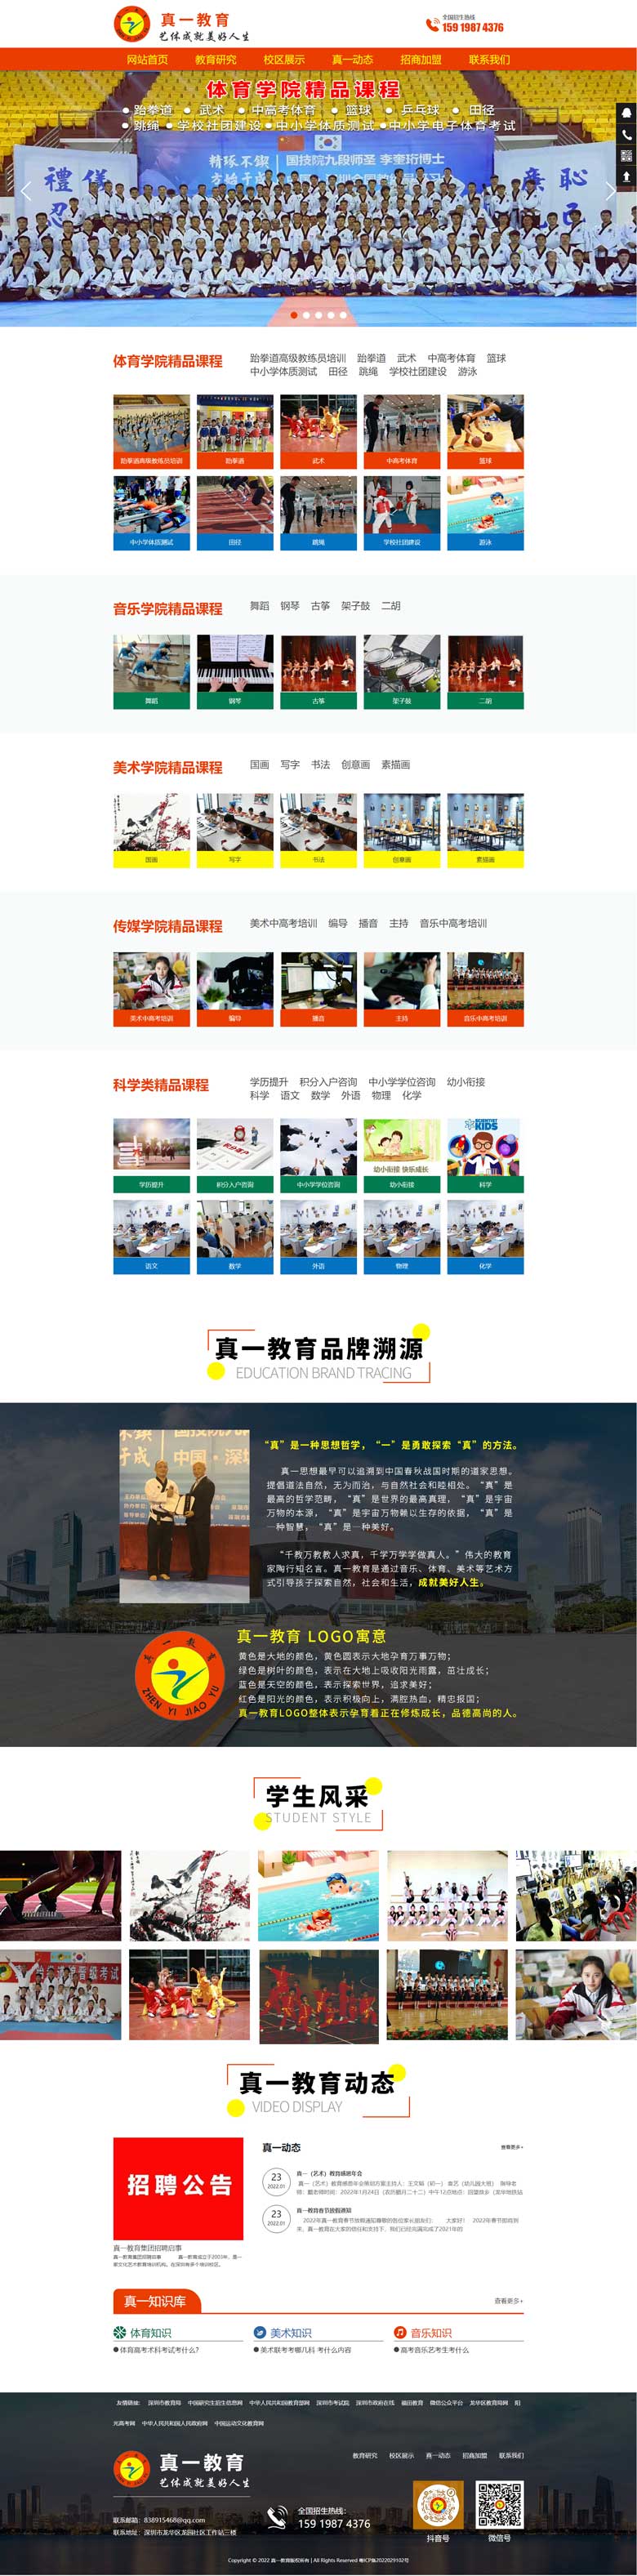 深圳网站建设案例之真一教育网站建设